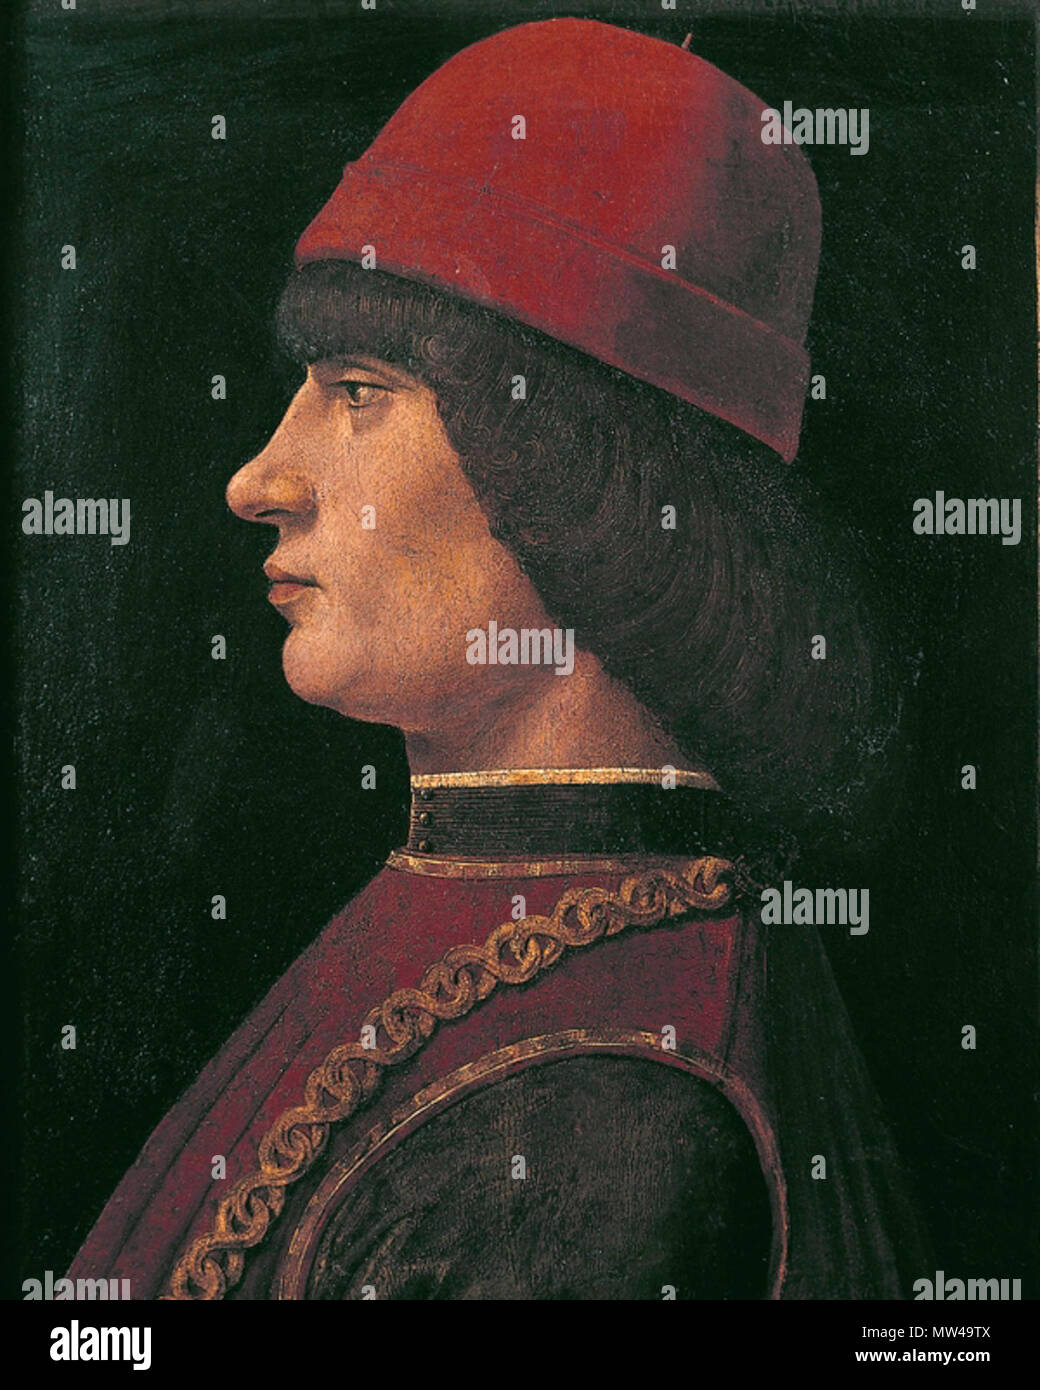 DEA-S-001117-6779 522 Ritratto di Giovanni Pico della Mirandola (XV secolo), olio su tela, particolare. Bergamo, Accademia Carrara Stock Photo